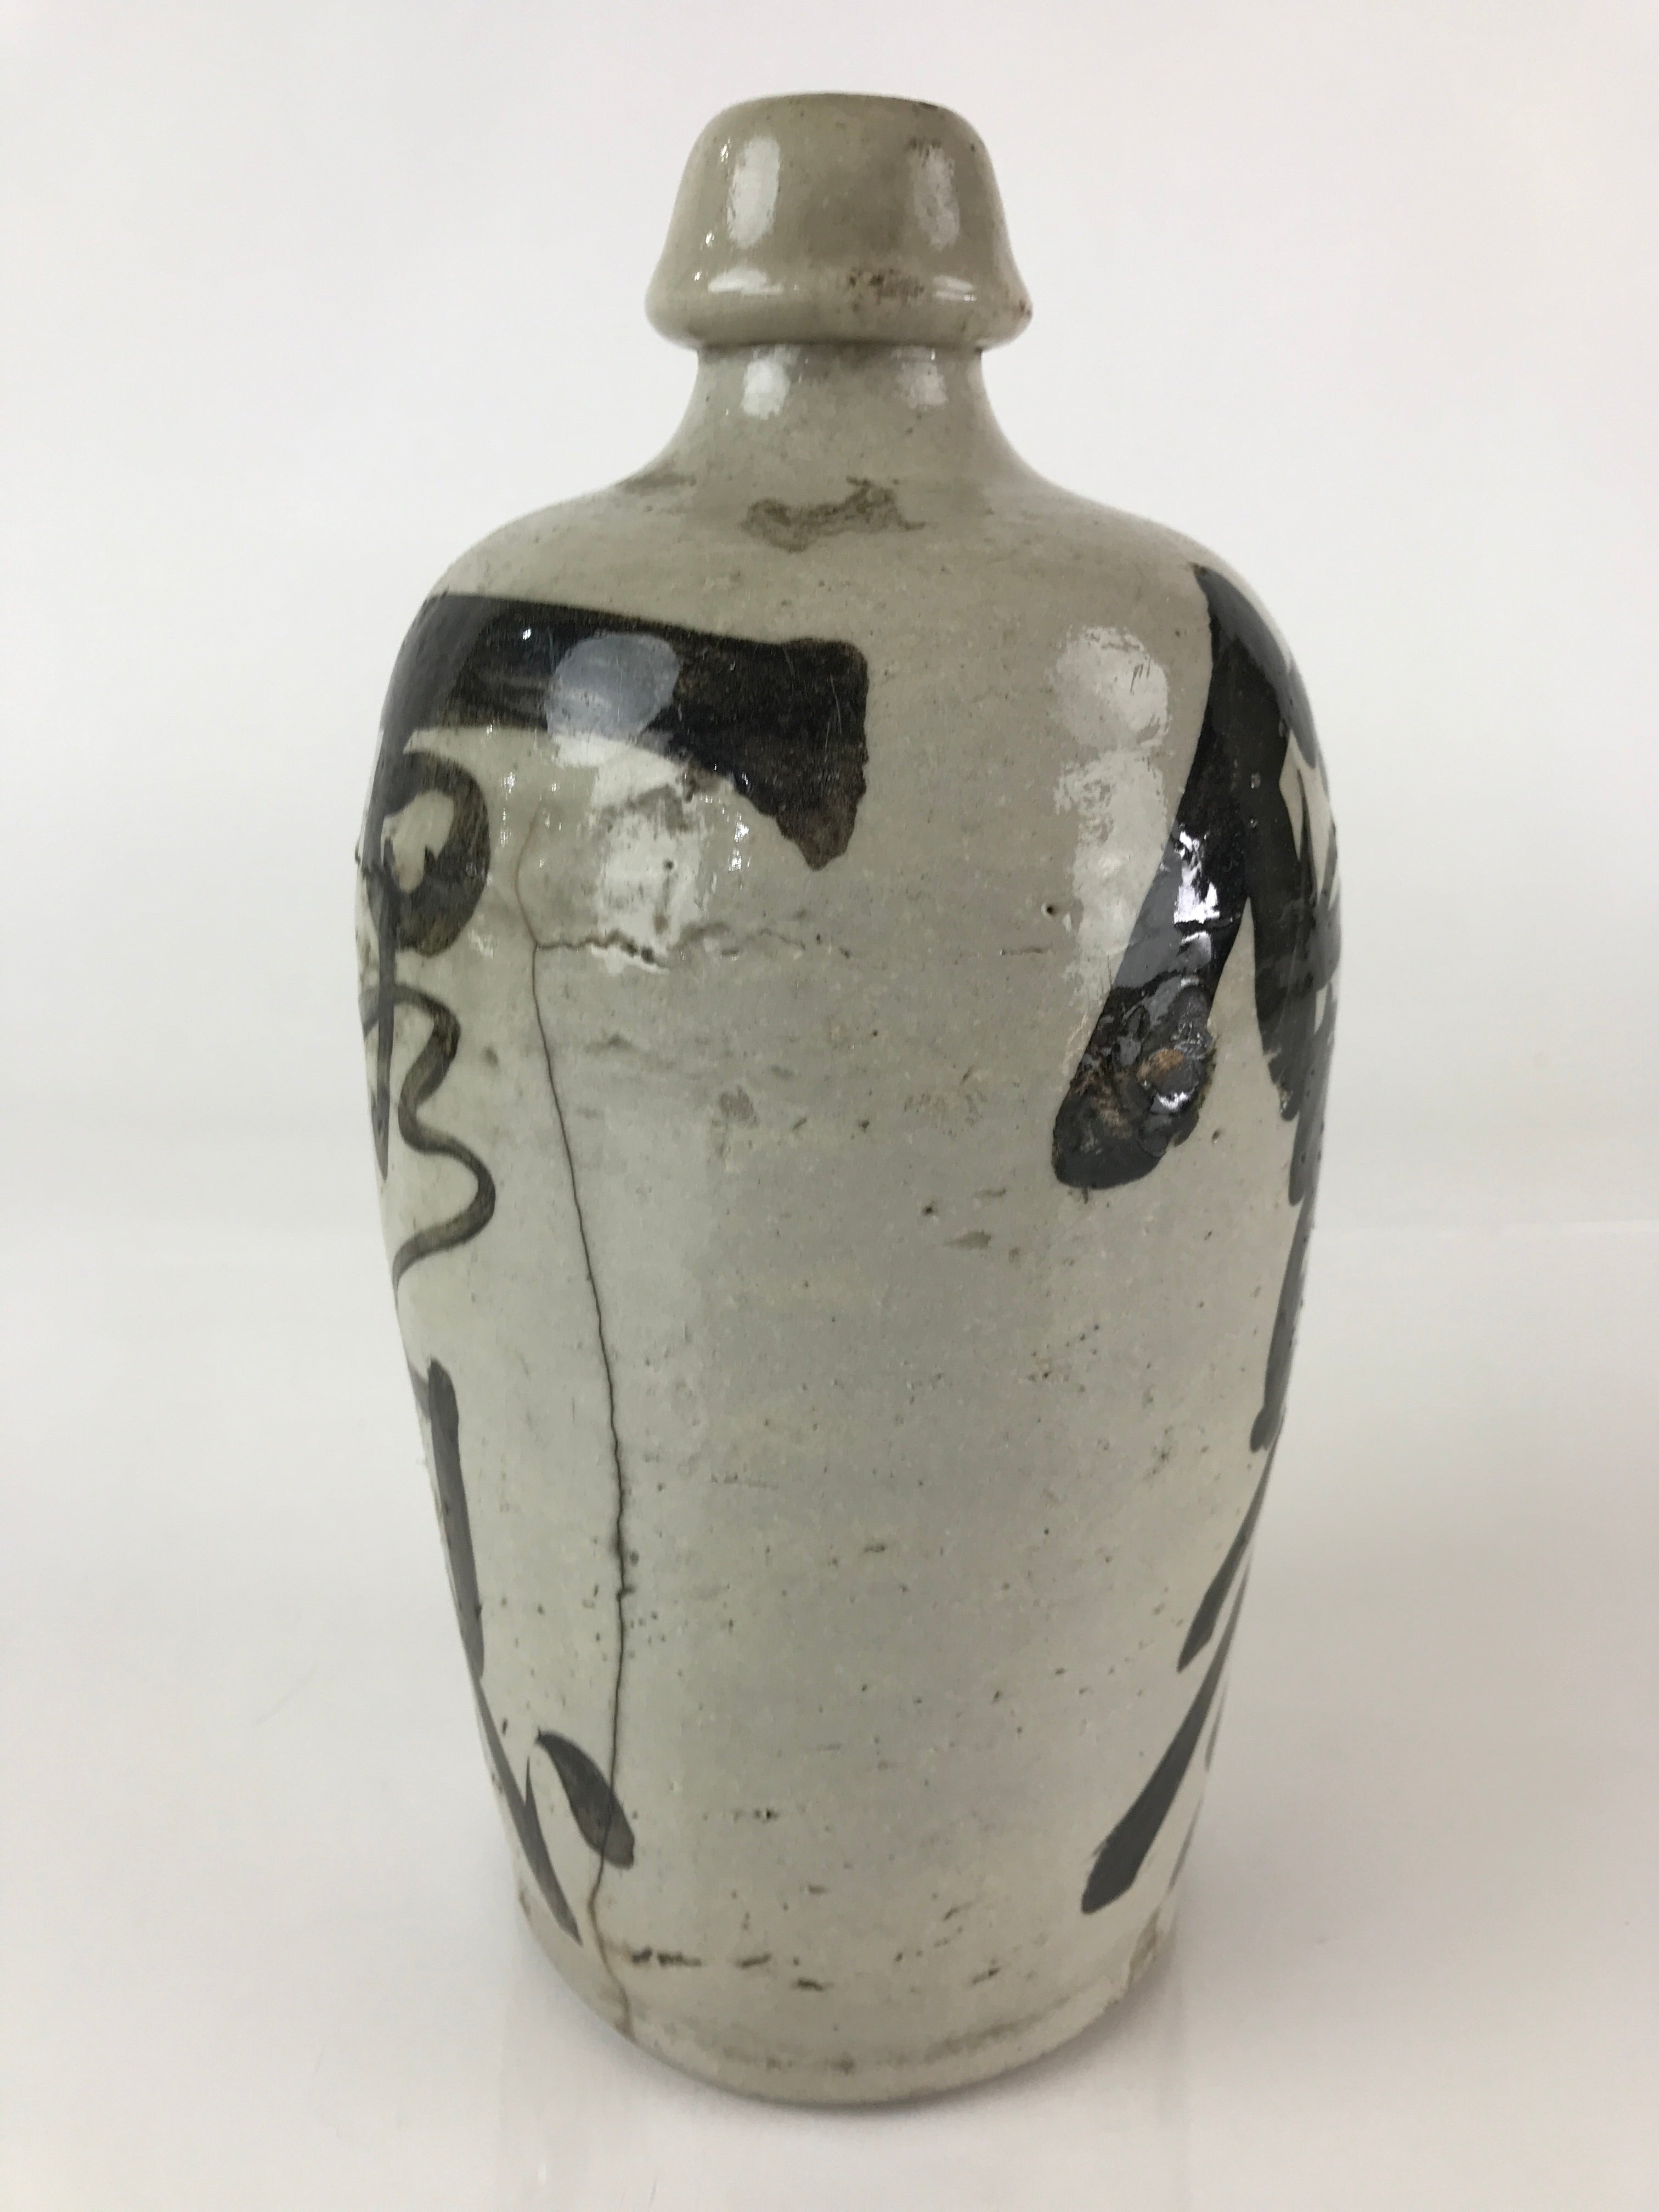 Japanese Ceramic Sake Bottle Tokkuri Vtg Pottery Gray Hand-Written Kanji TS477